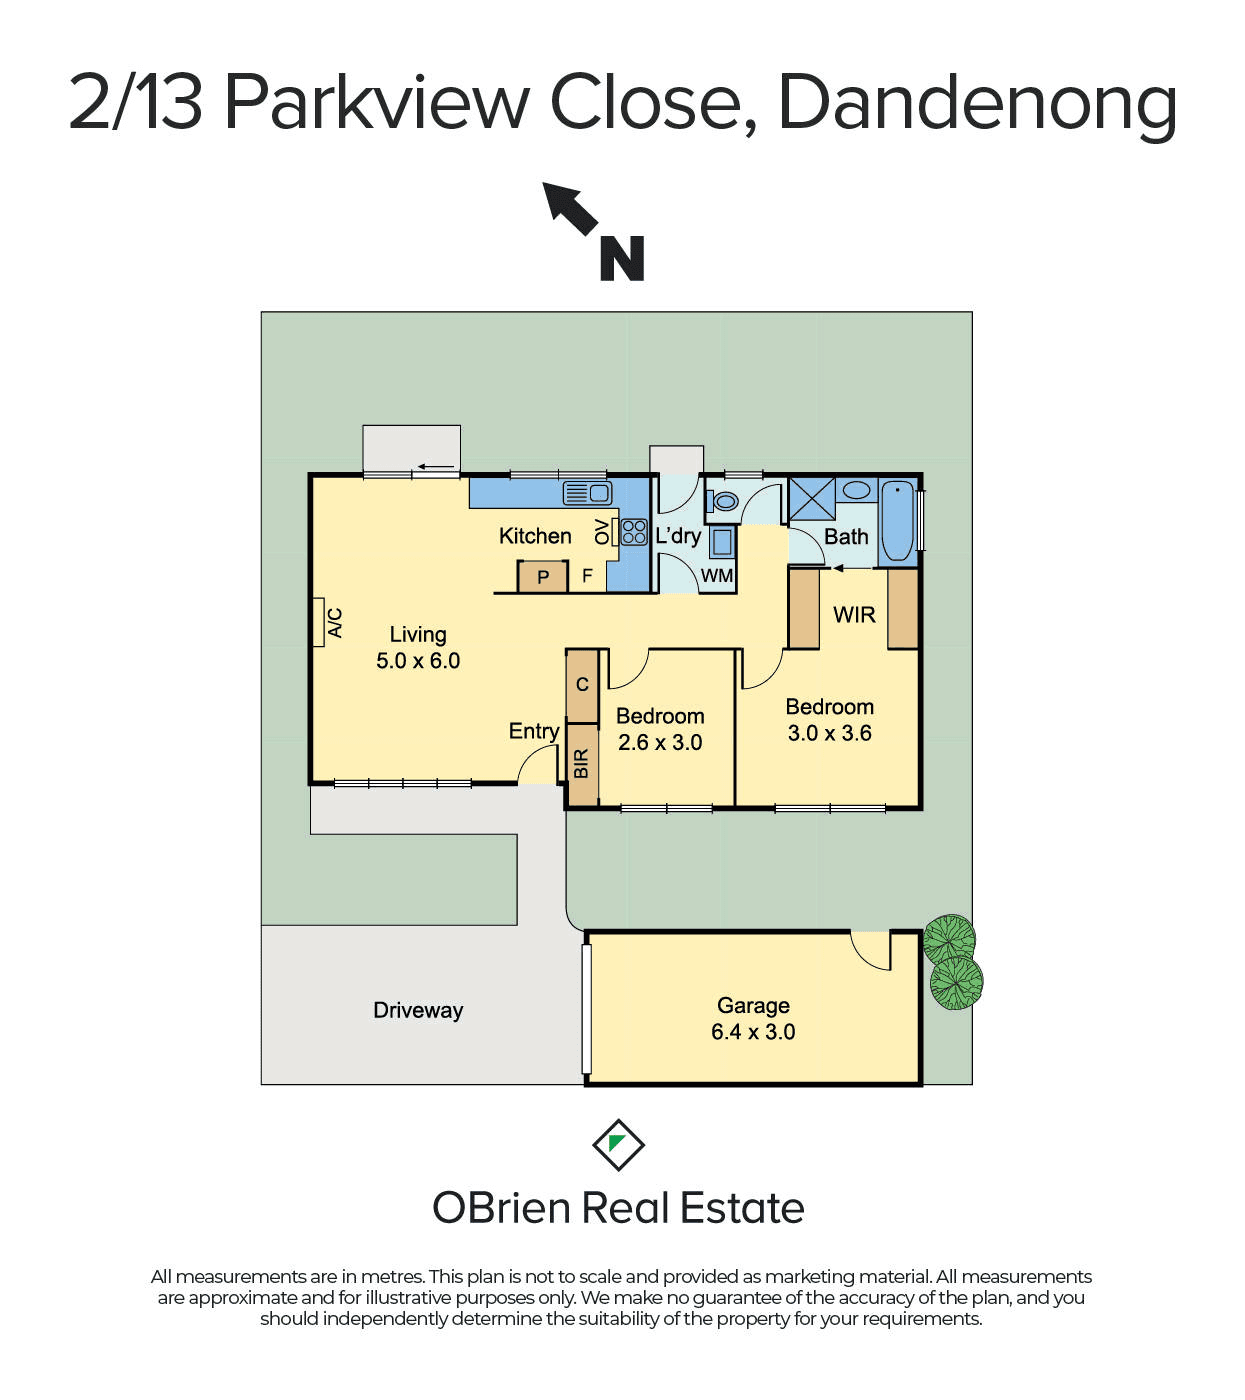 2/13 Parkview Close, Dandenong, VIC 3175